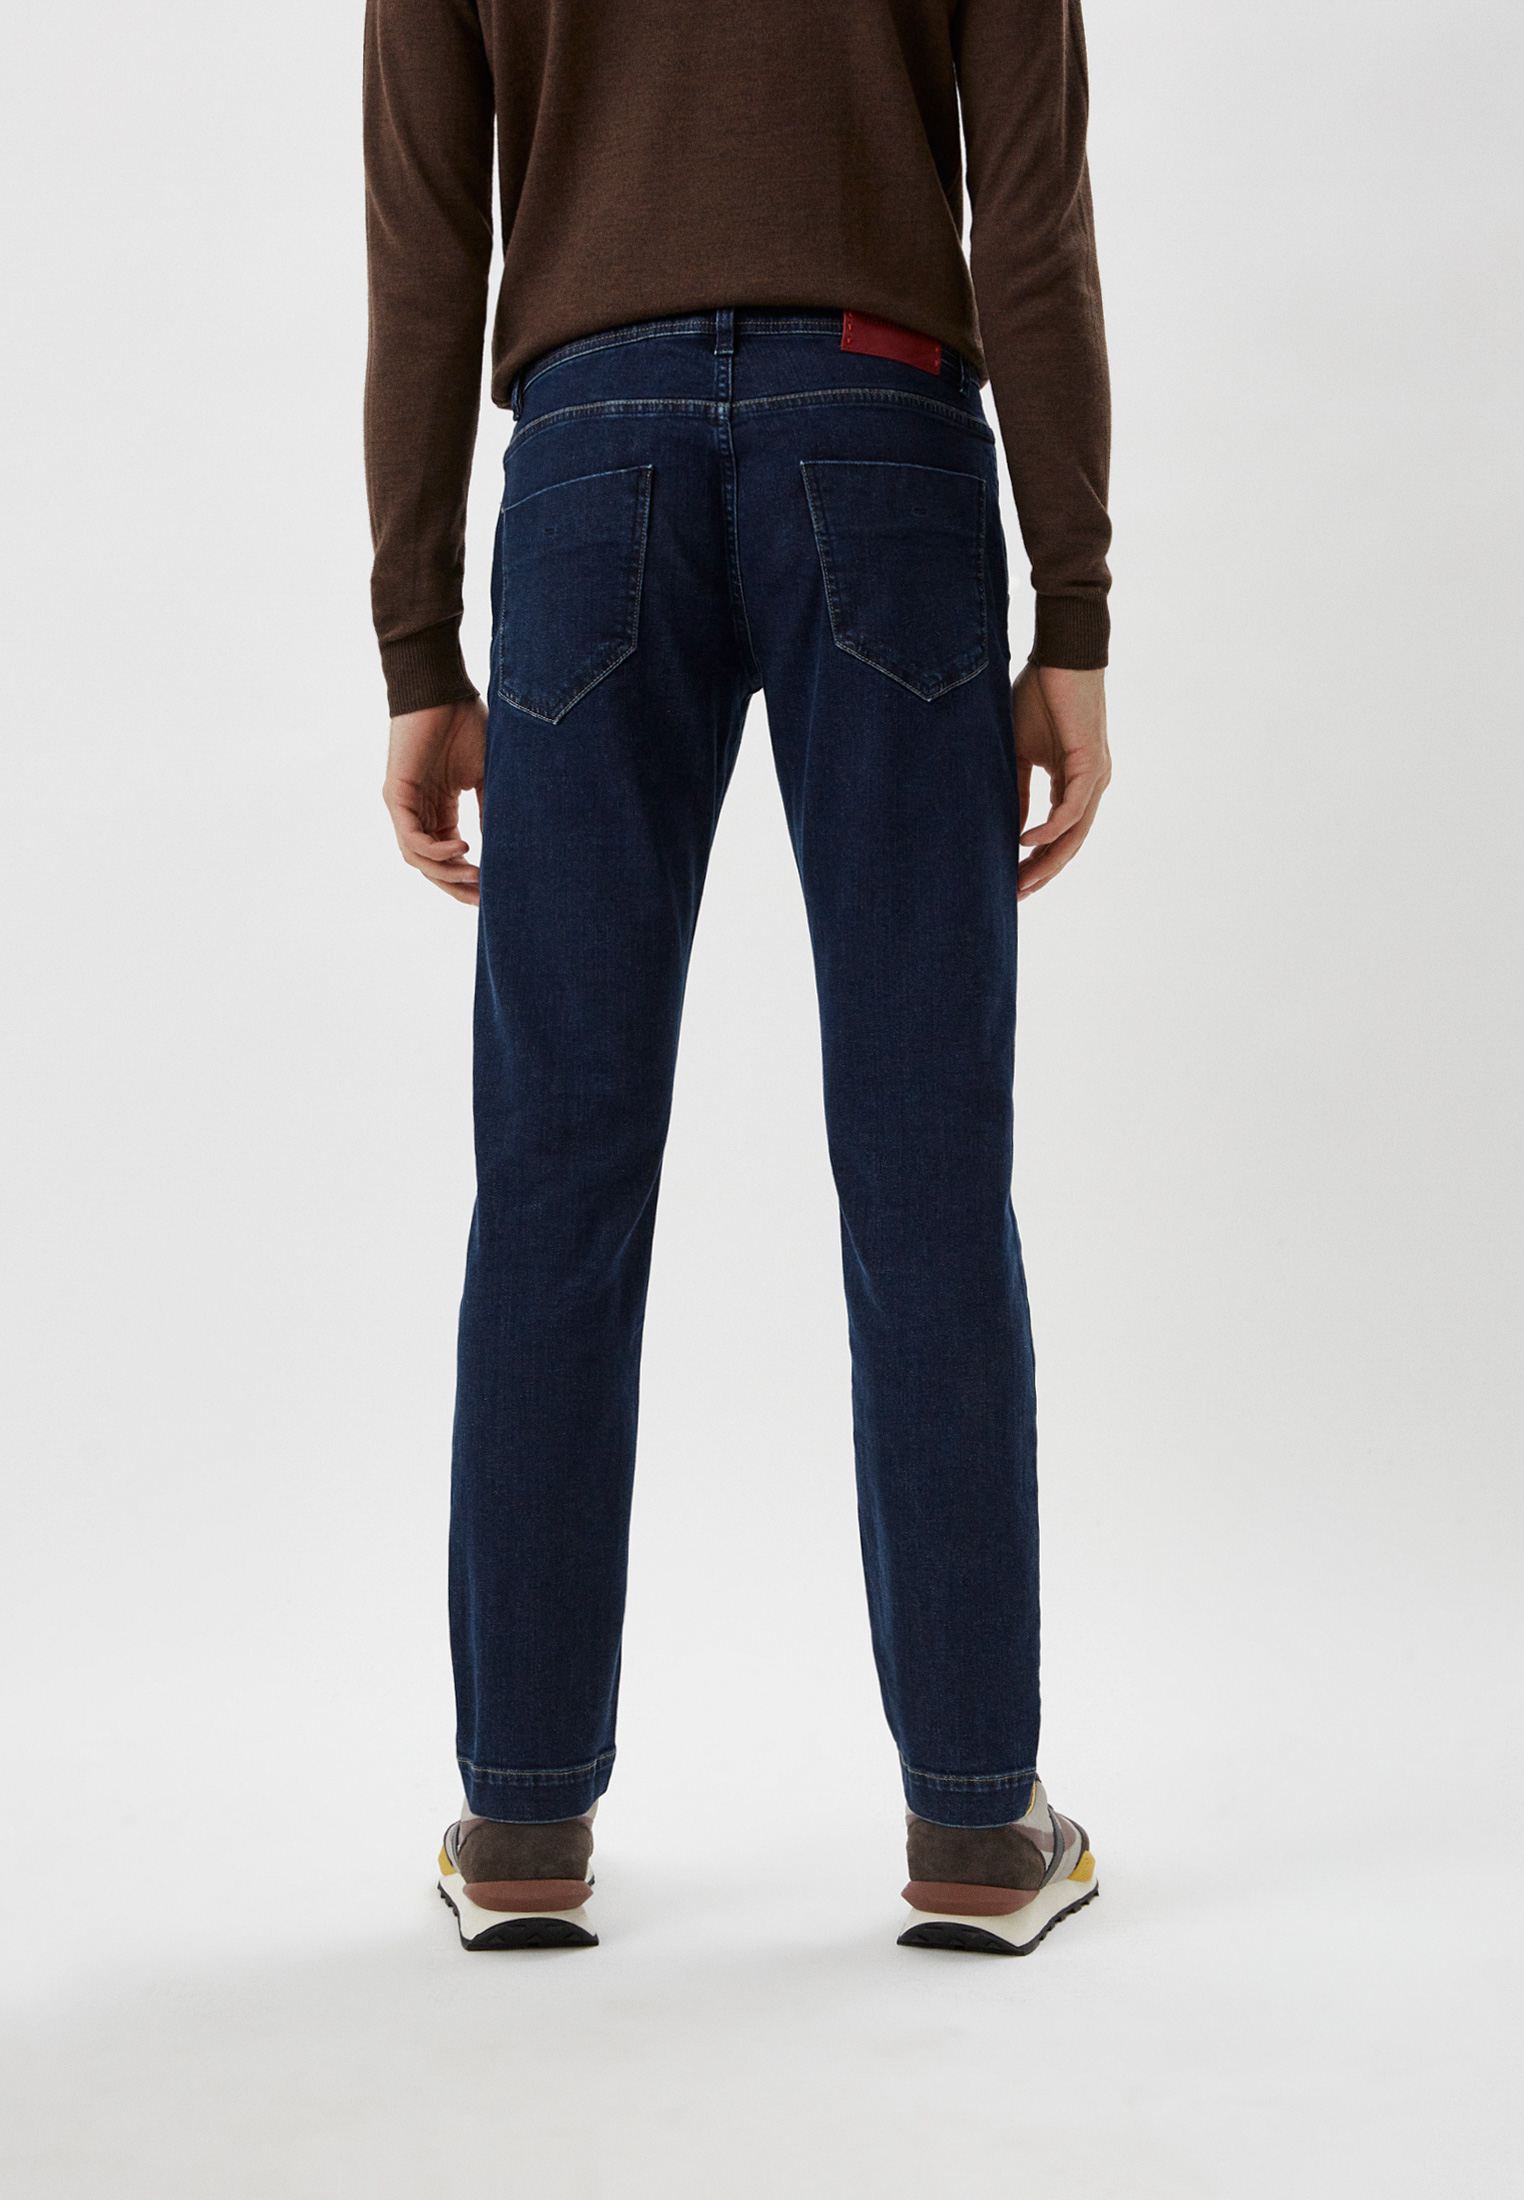 Мужские прямые джинсы Baldinini (Балдинини) M11: изображение 3